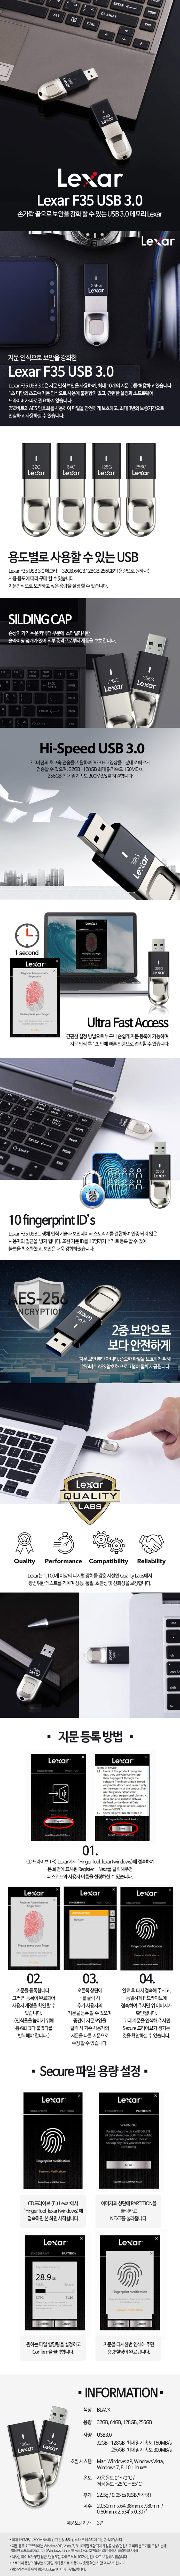 렉사 Lexar JumpDrive 지문 보안 F35 USB 3.0 64GB 53,900원 - 렉사 디지털, PC저장장치, USB, USB 바보사랑 렉사 Lexar JumpDrive 지문 보안 F35 USB 3.0 64GB 53,900원 - 렉사 디지털, PC저장장치, USB, USB 바보사랑